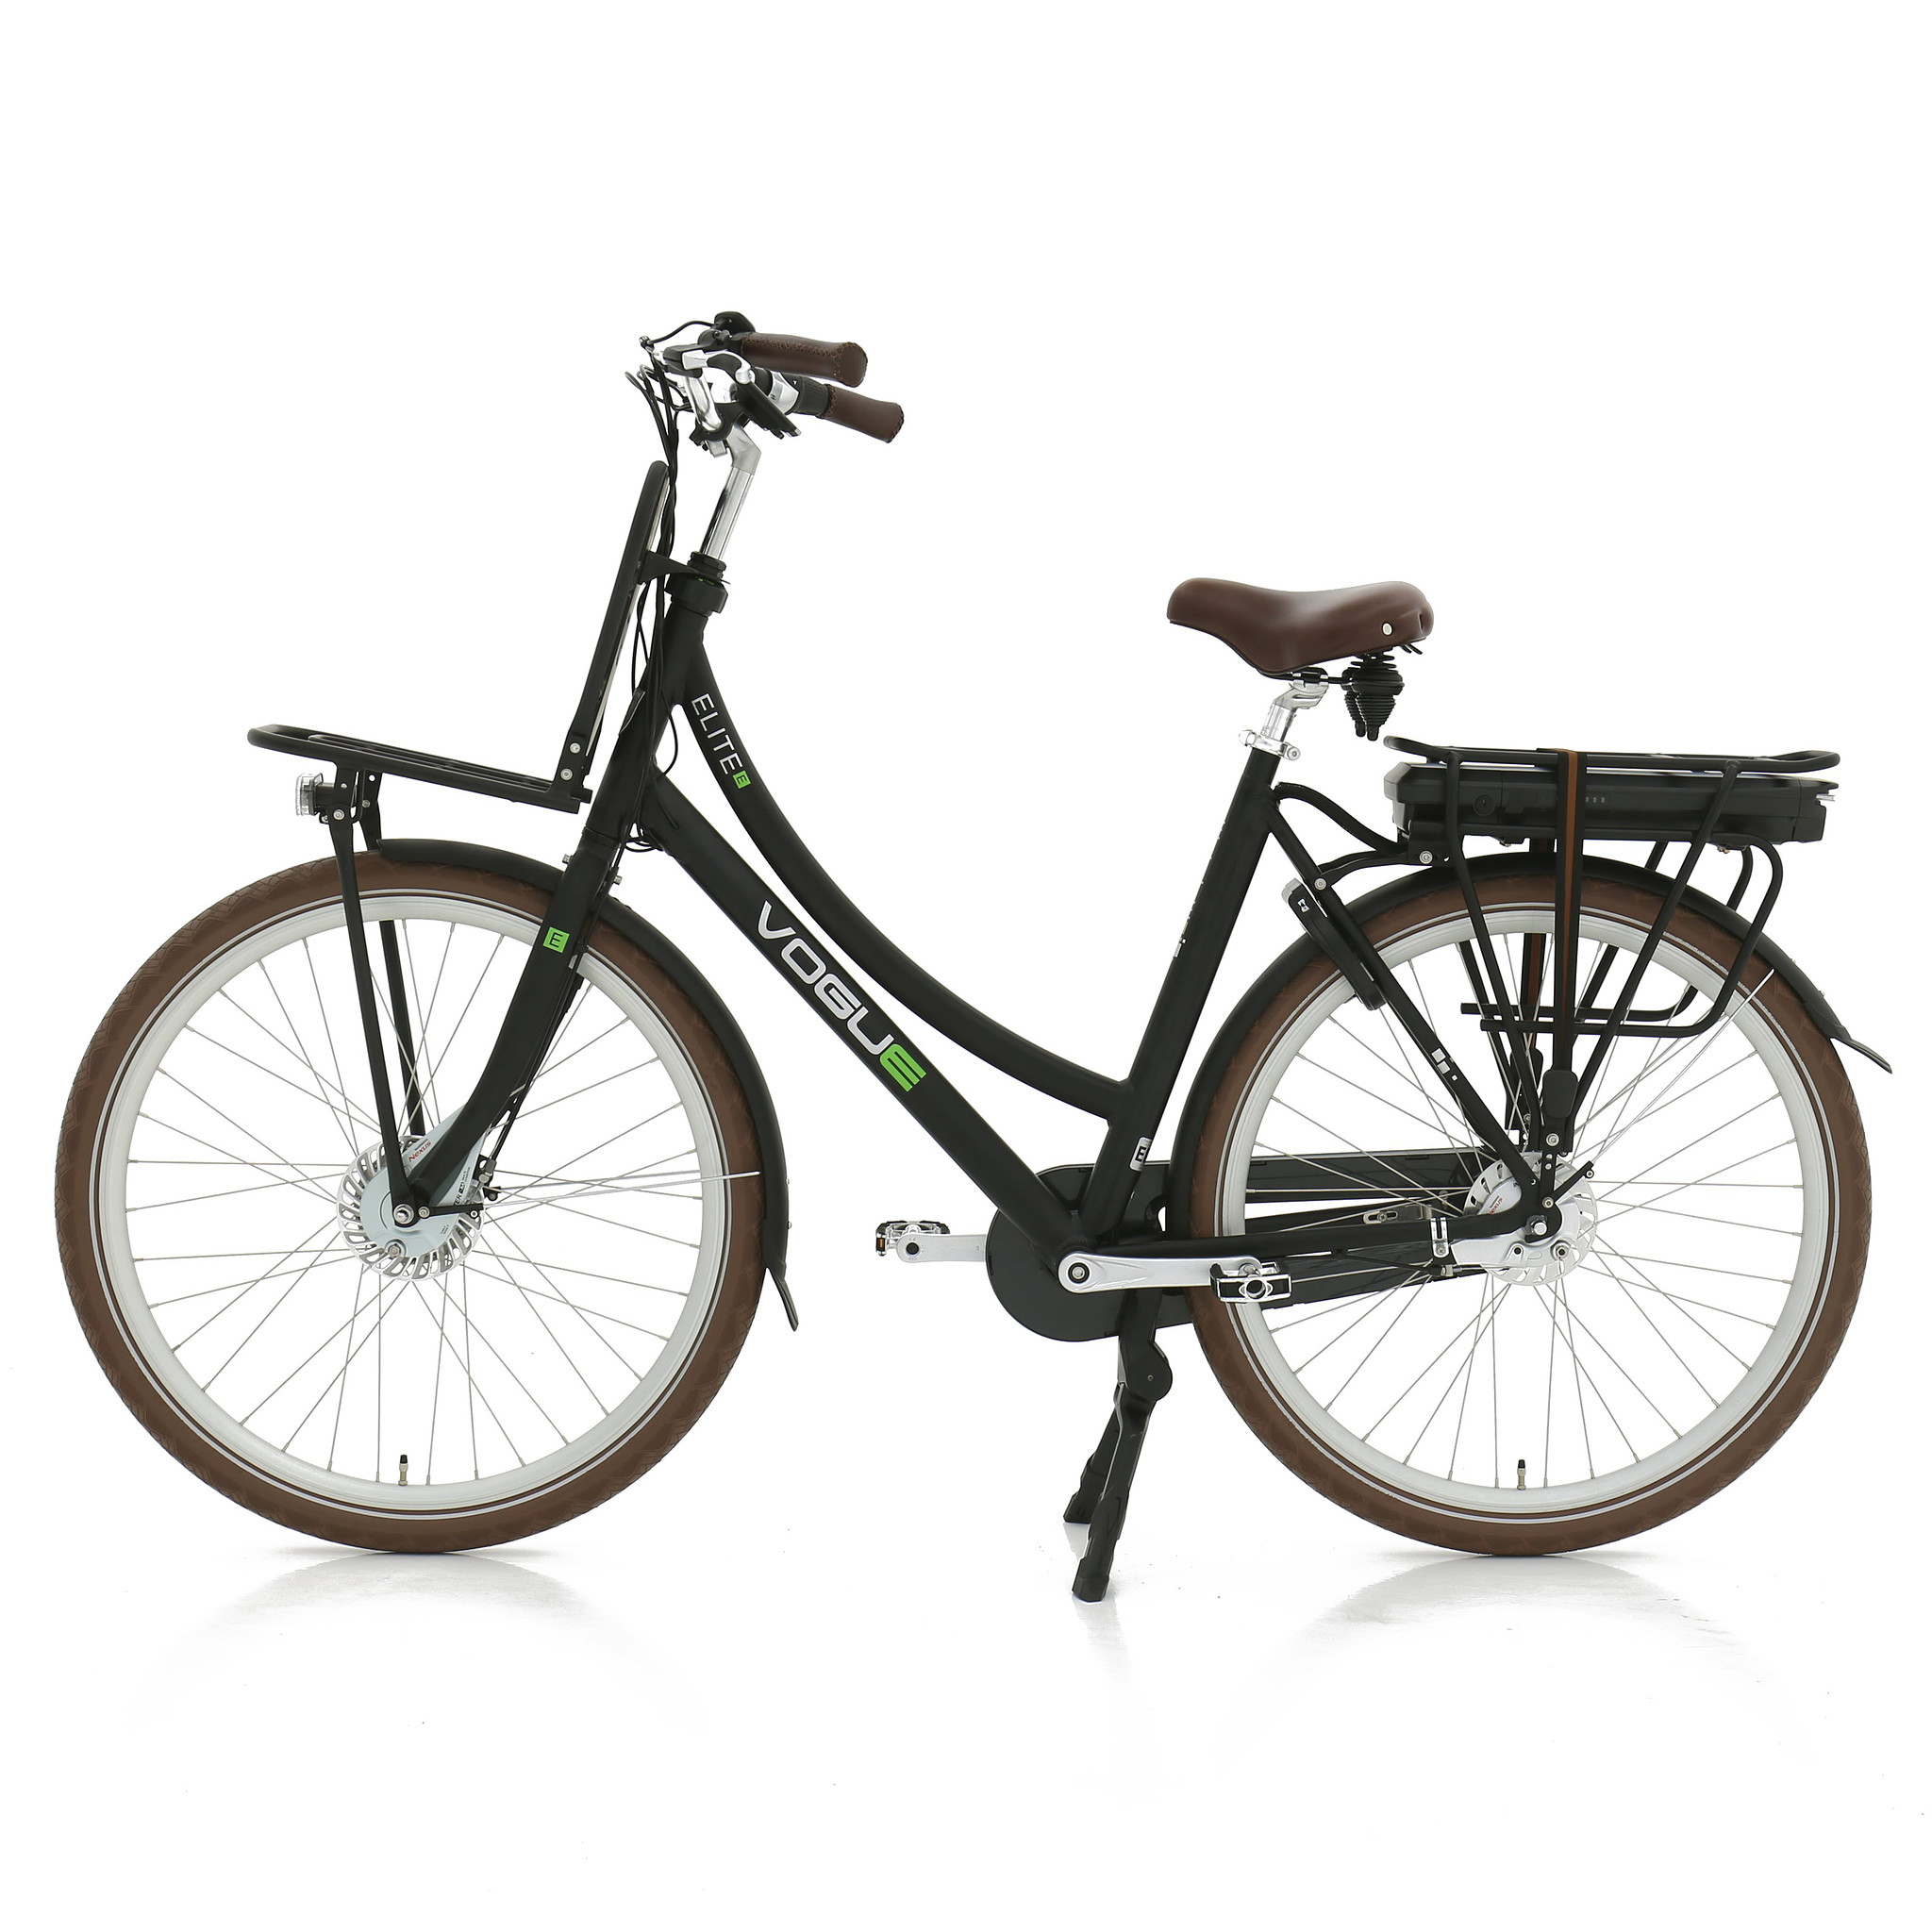 Vogue Elektrische fiets Elite Plus Dames 57 cm Zwart 468 Wh Zwart